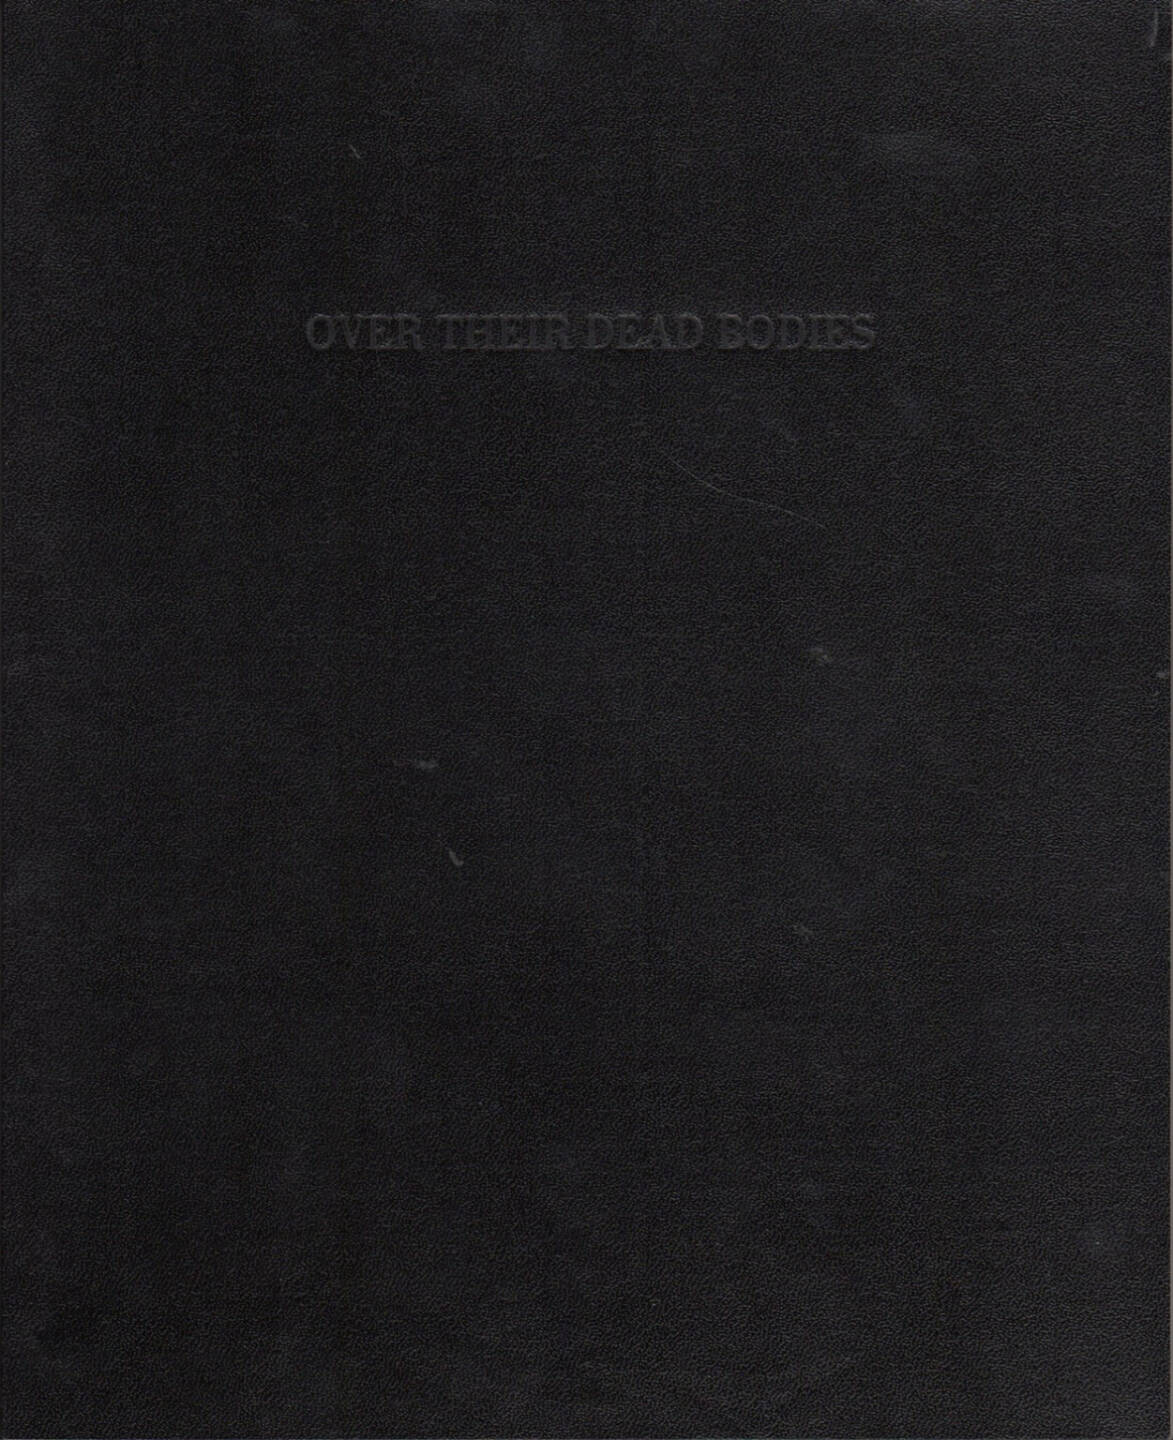 Kensuke Koike - over their dead bodies, blisterZine 2015, Cover - http://josefchladek.com/book/kensuke_koike_-_over_their_dead_bodies